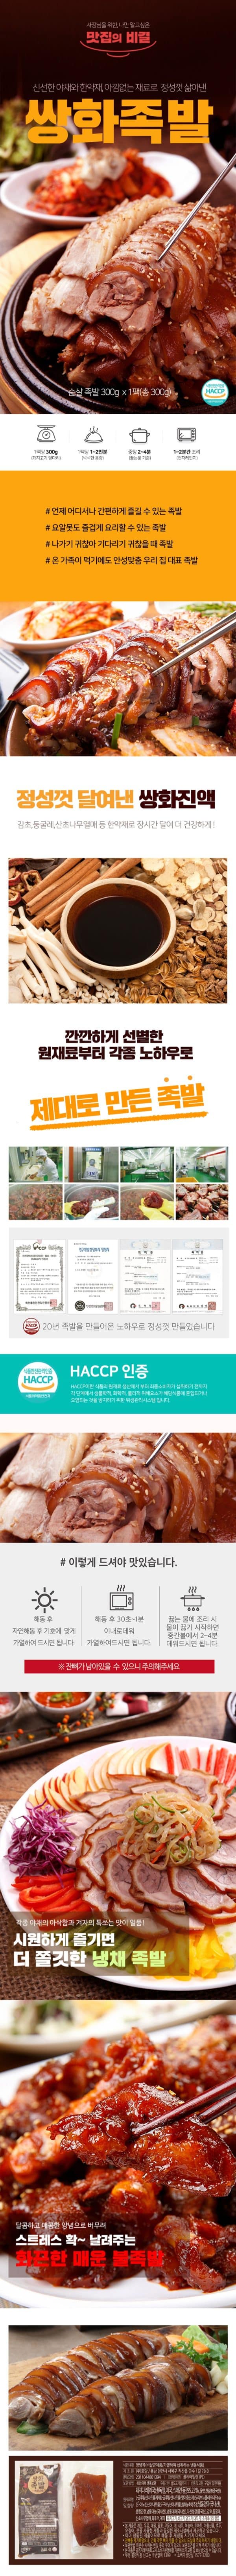 韓國食品-[차리고] 쌍화족발 300g